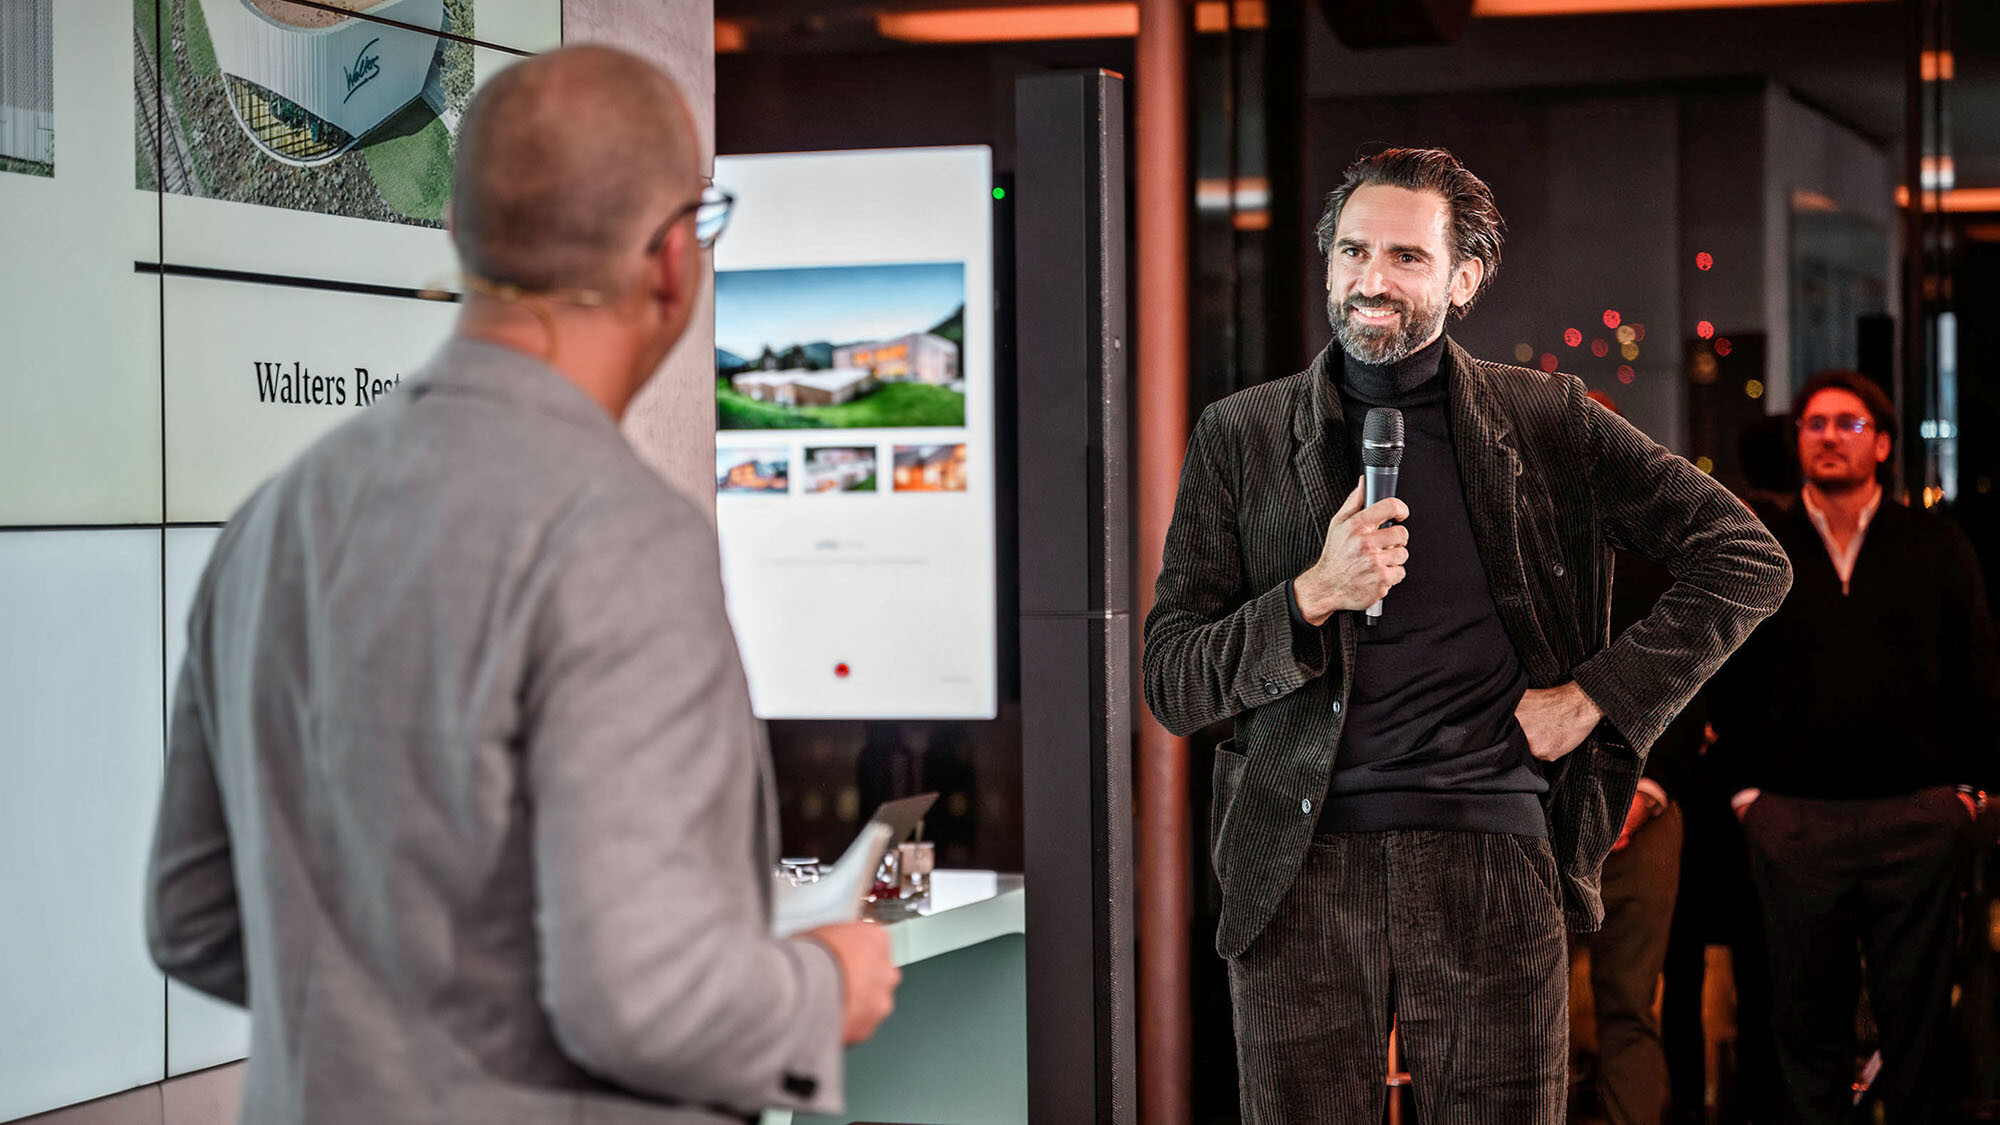 Marketingový manažer International Jürgen Jungmair a architekt Thomas Heil z rakouské kanceláře dreiplus Architekten v rozhovoru před prezentačním prostorem.